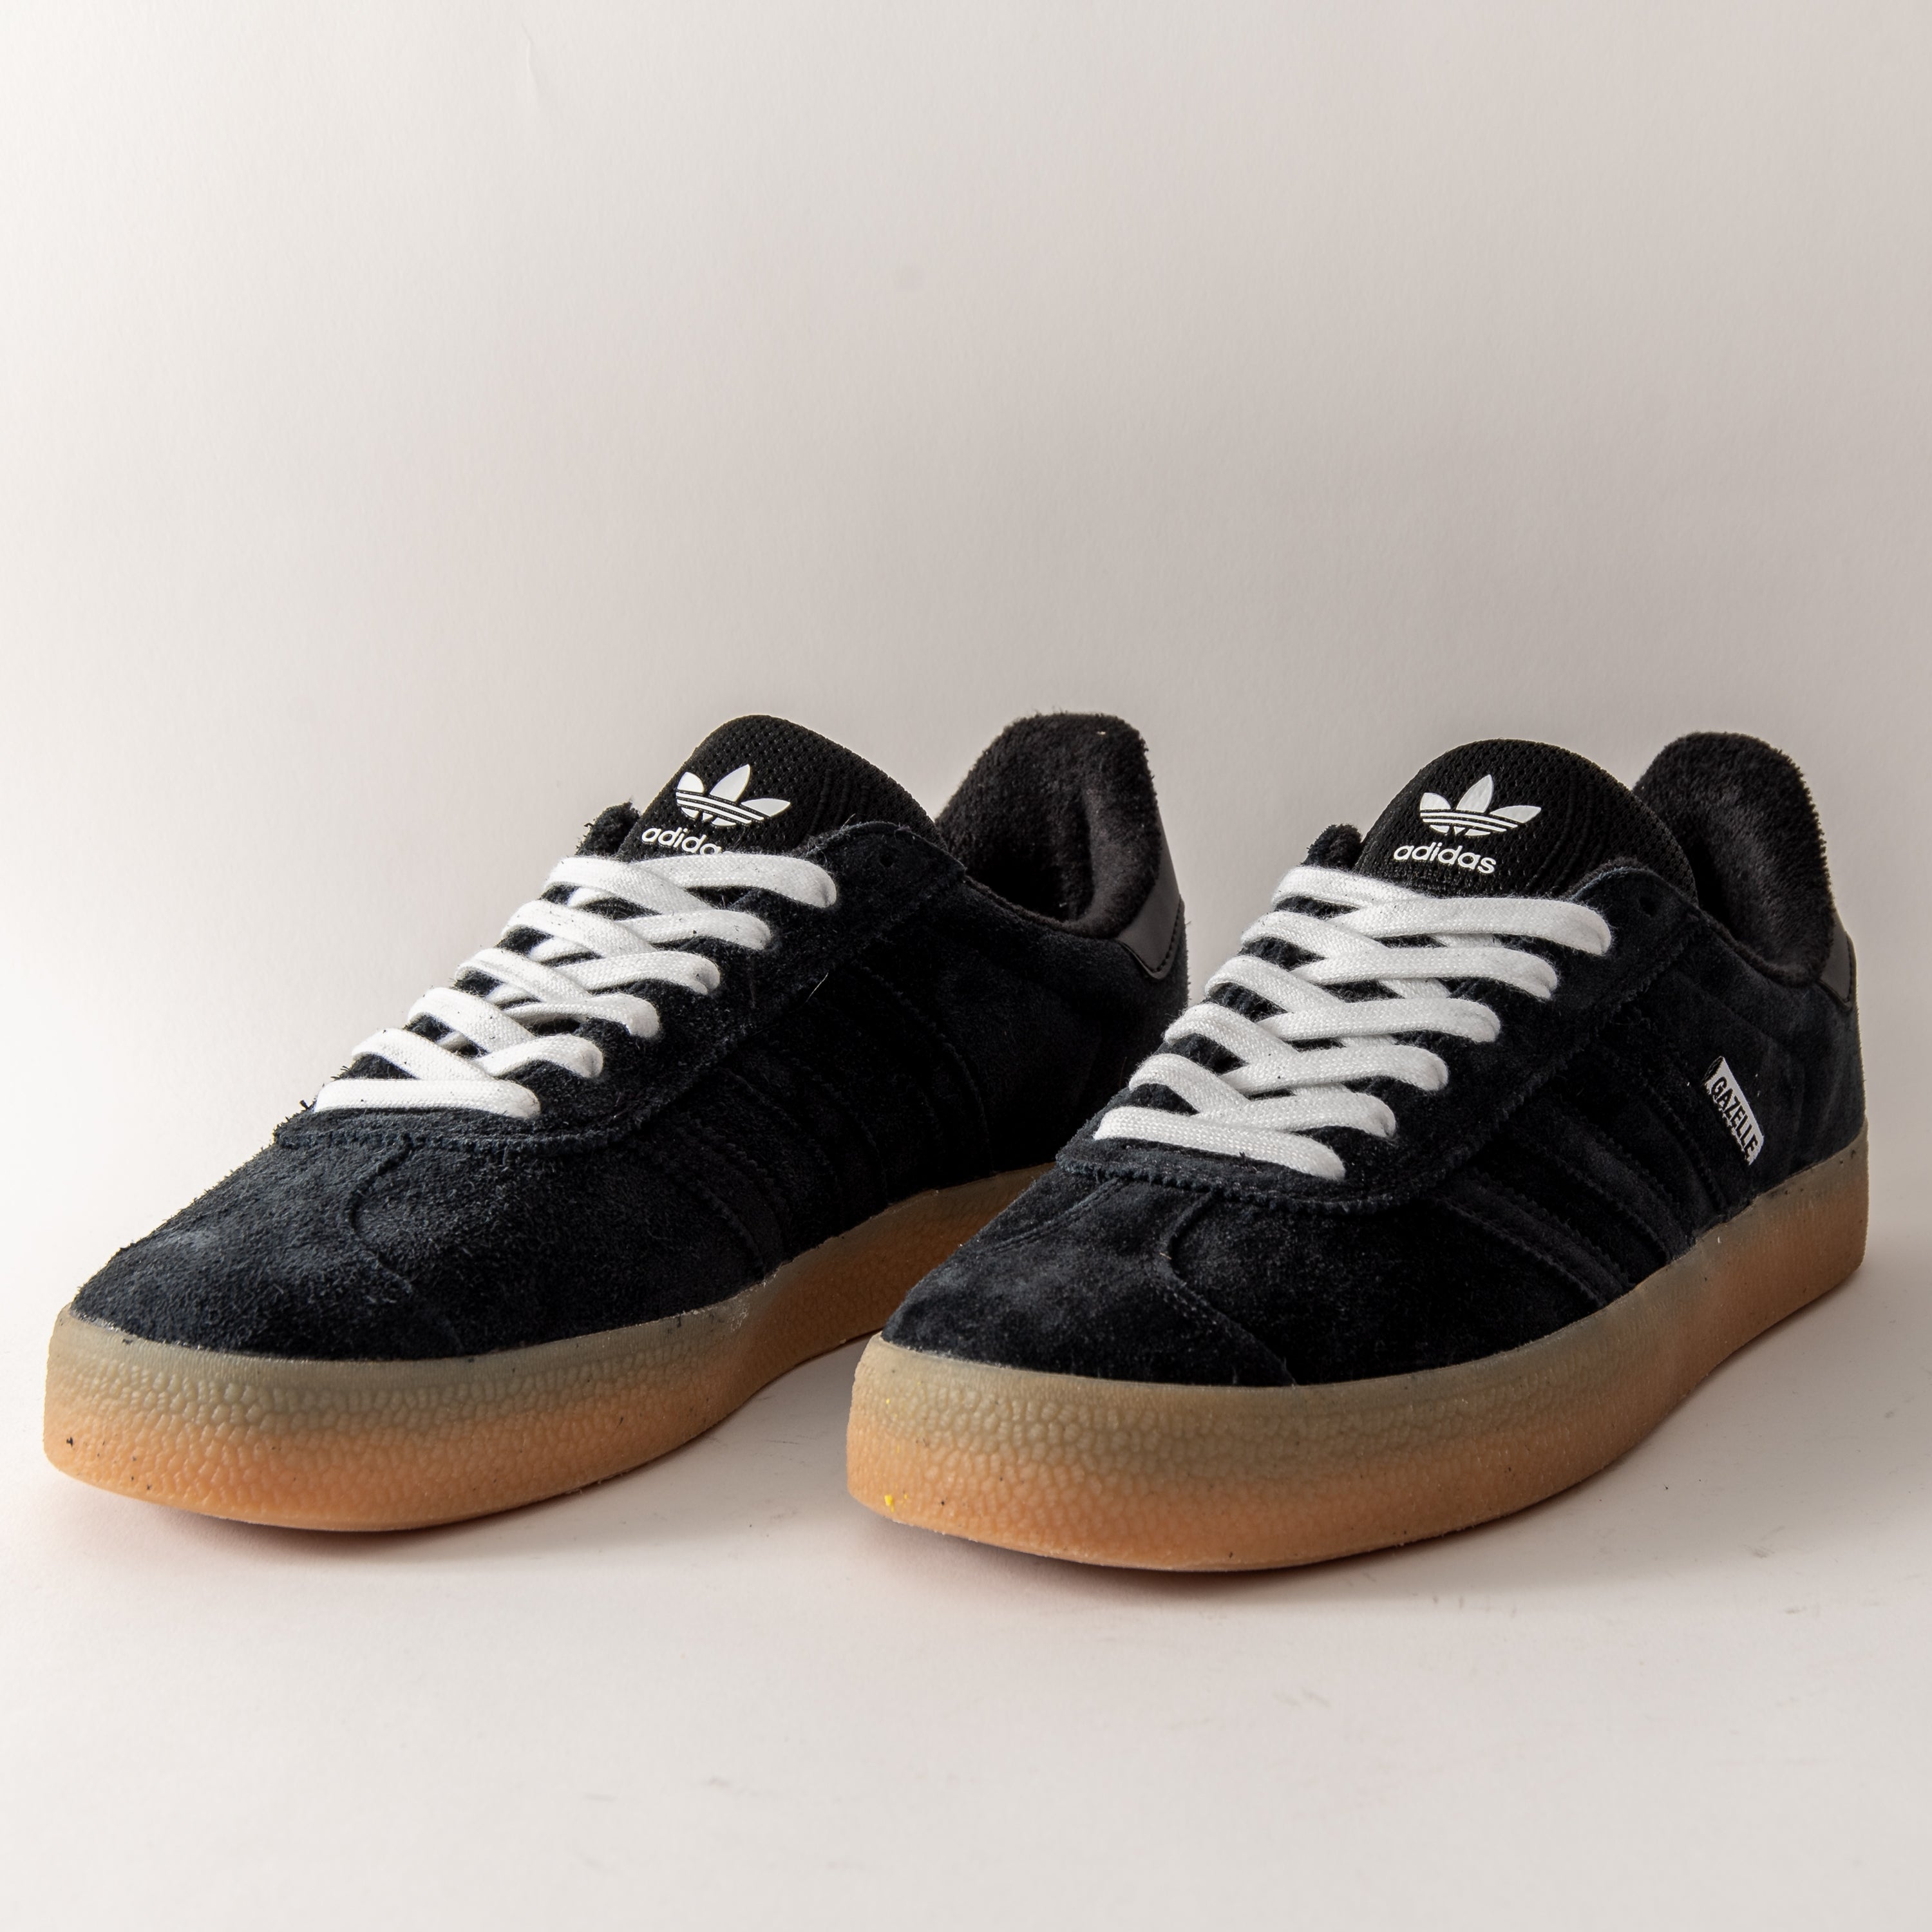 Adidas Gazelle ADV (Black/Gum)